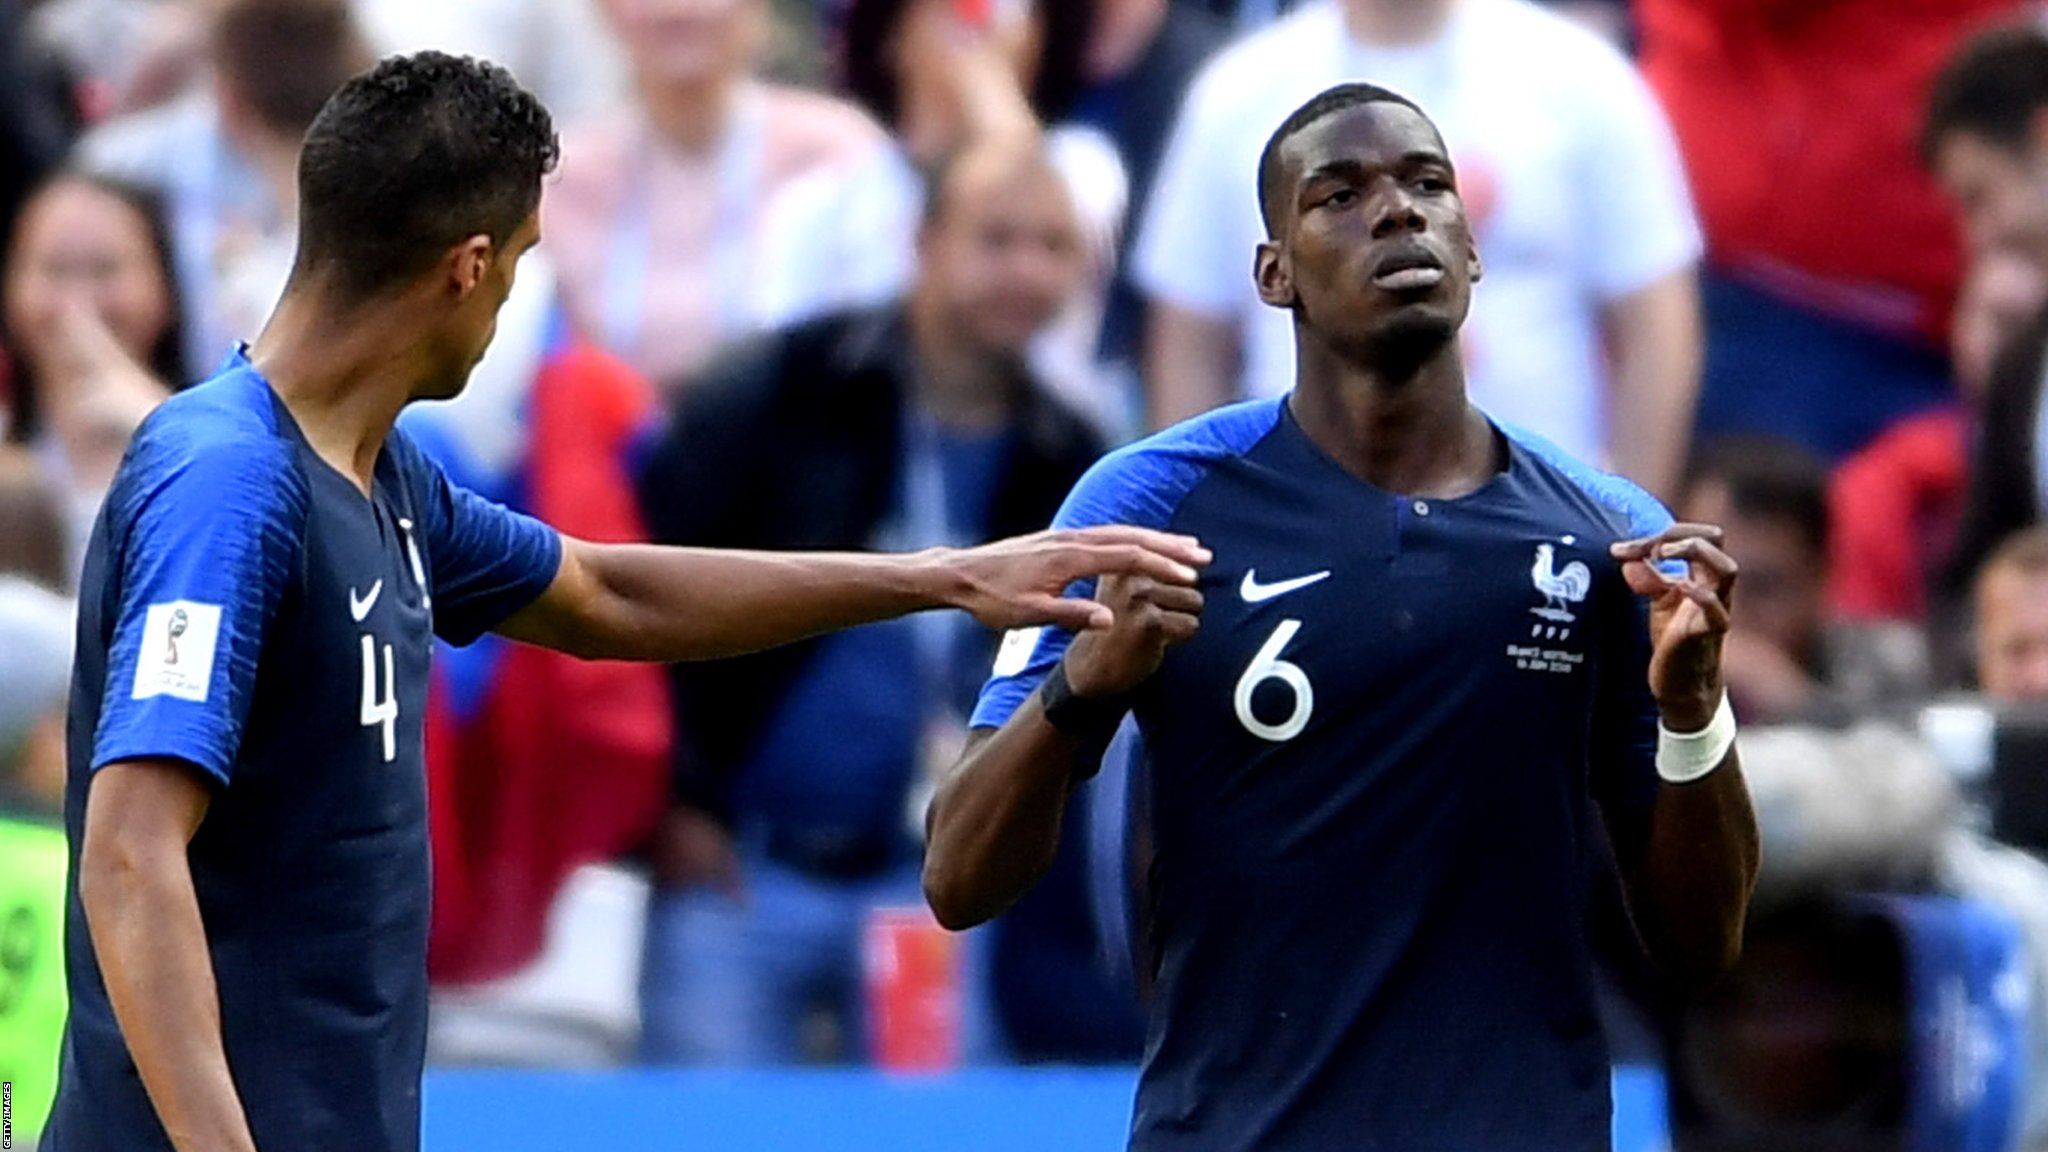 Paul Pogba celebrates scoring for France